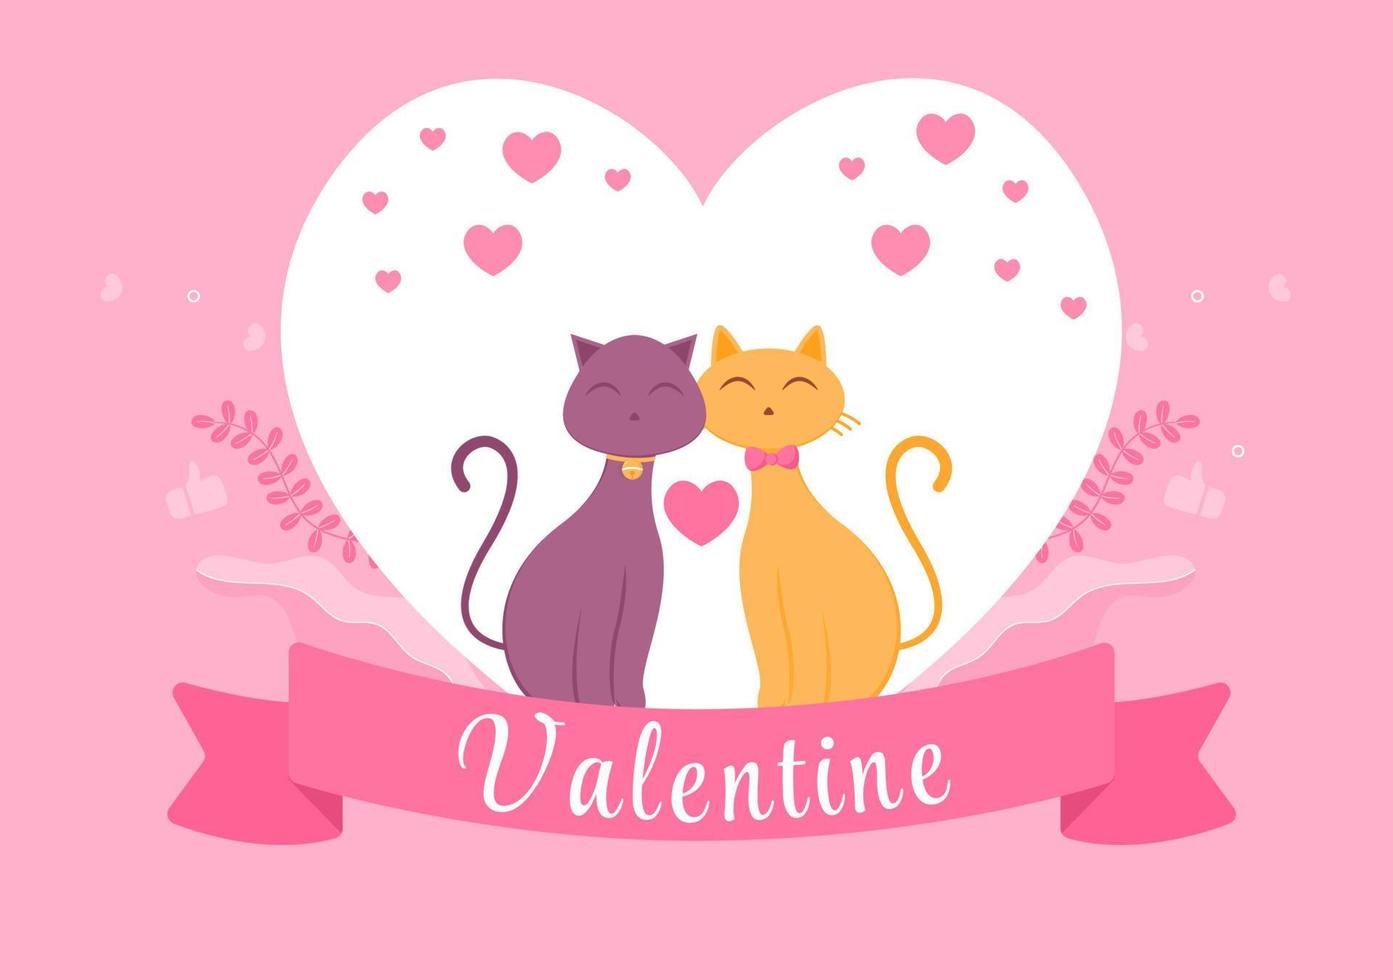 söt par djurkatt glad alla hjärtans dag platt designillustration som firas den 17 februari för kärlekshälsningskort vektor